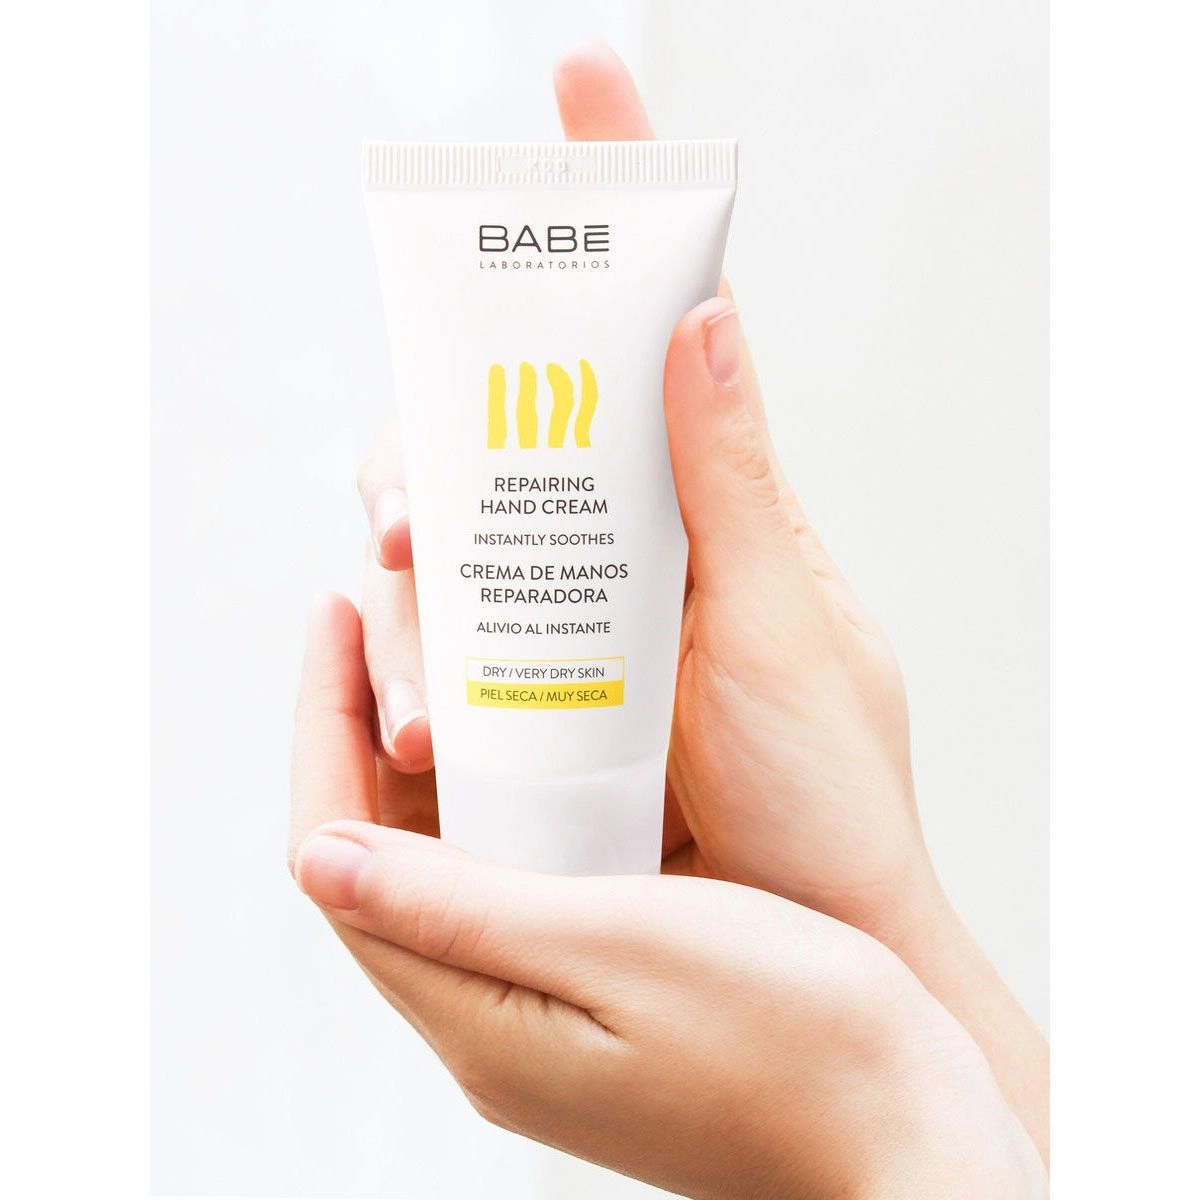 Восстанавливающий крем для рук для сухой и потрескавшейся кожи - BABE Laboratorios Hand Cream, 50 мл - фото N4